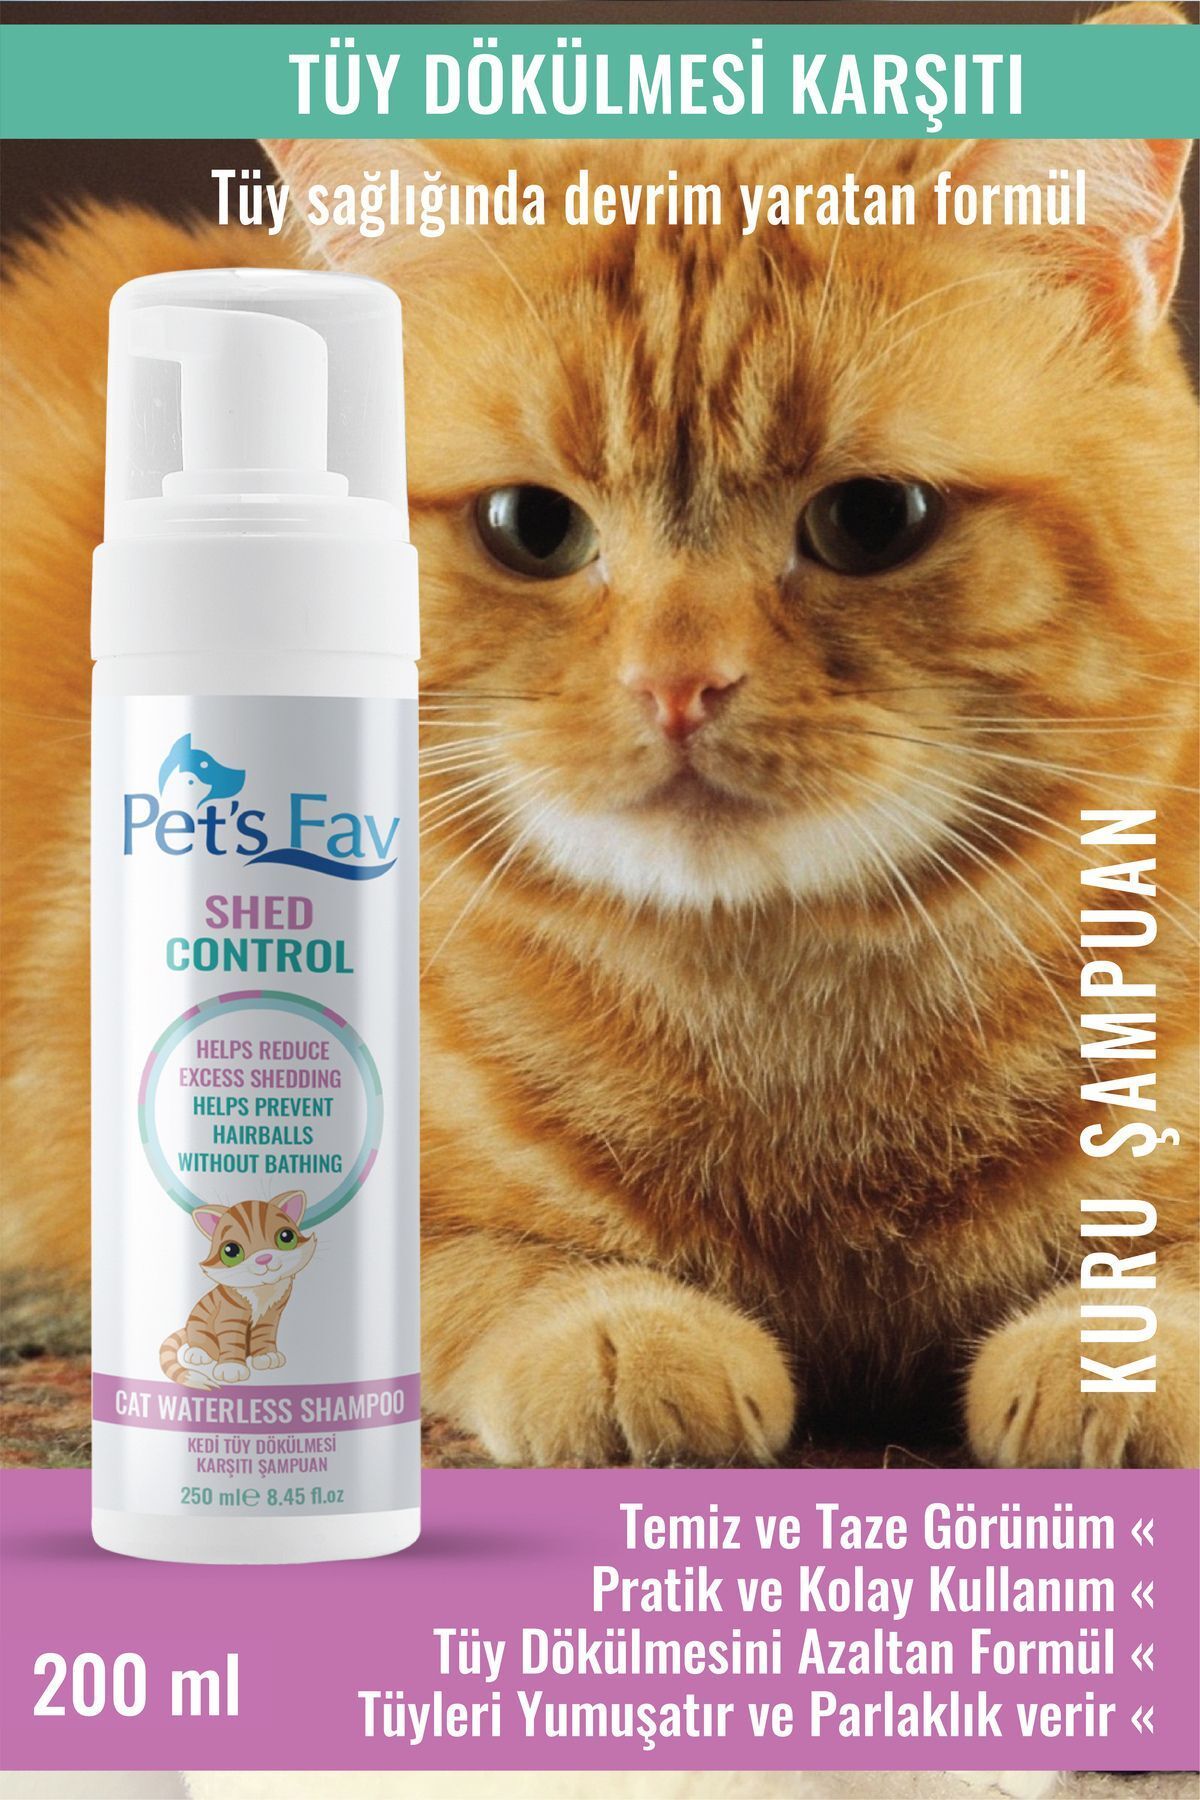 Pets Fav Kedi Tüy Dökülmesi Karşıtı Doğal ve Organik Kuru Köpük Şampuanı